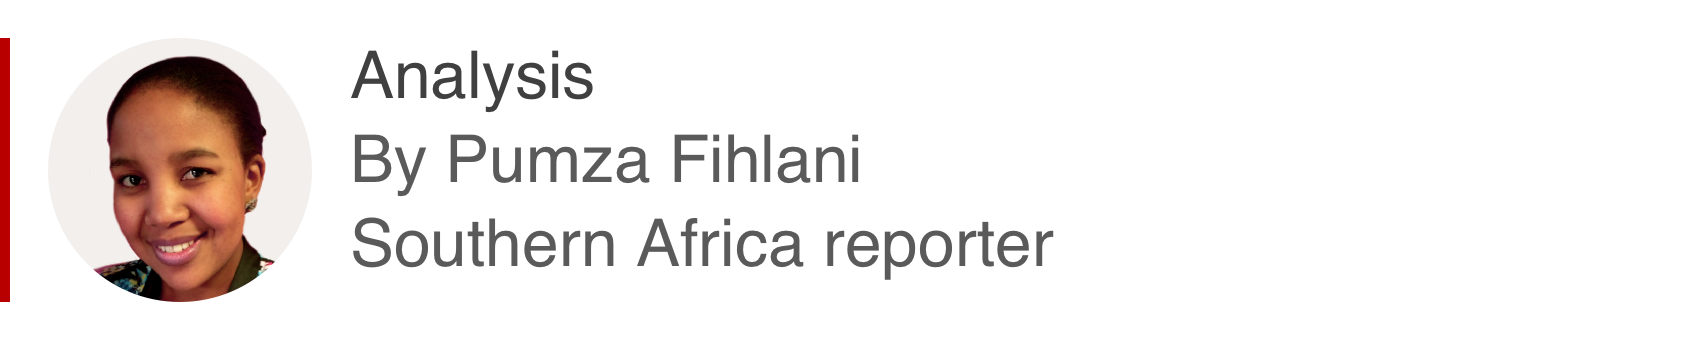 Аналитический бокс Пумзы Фихлани, репортера из Южной Африки